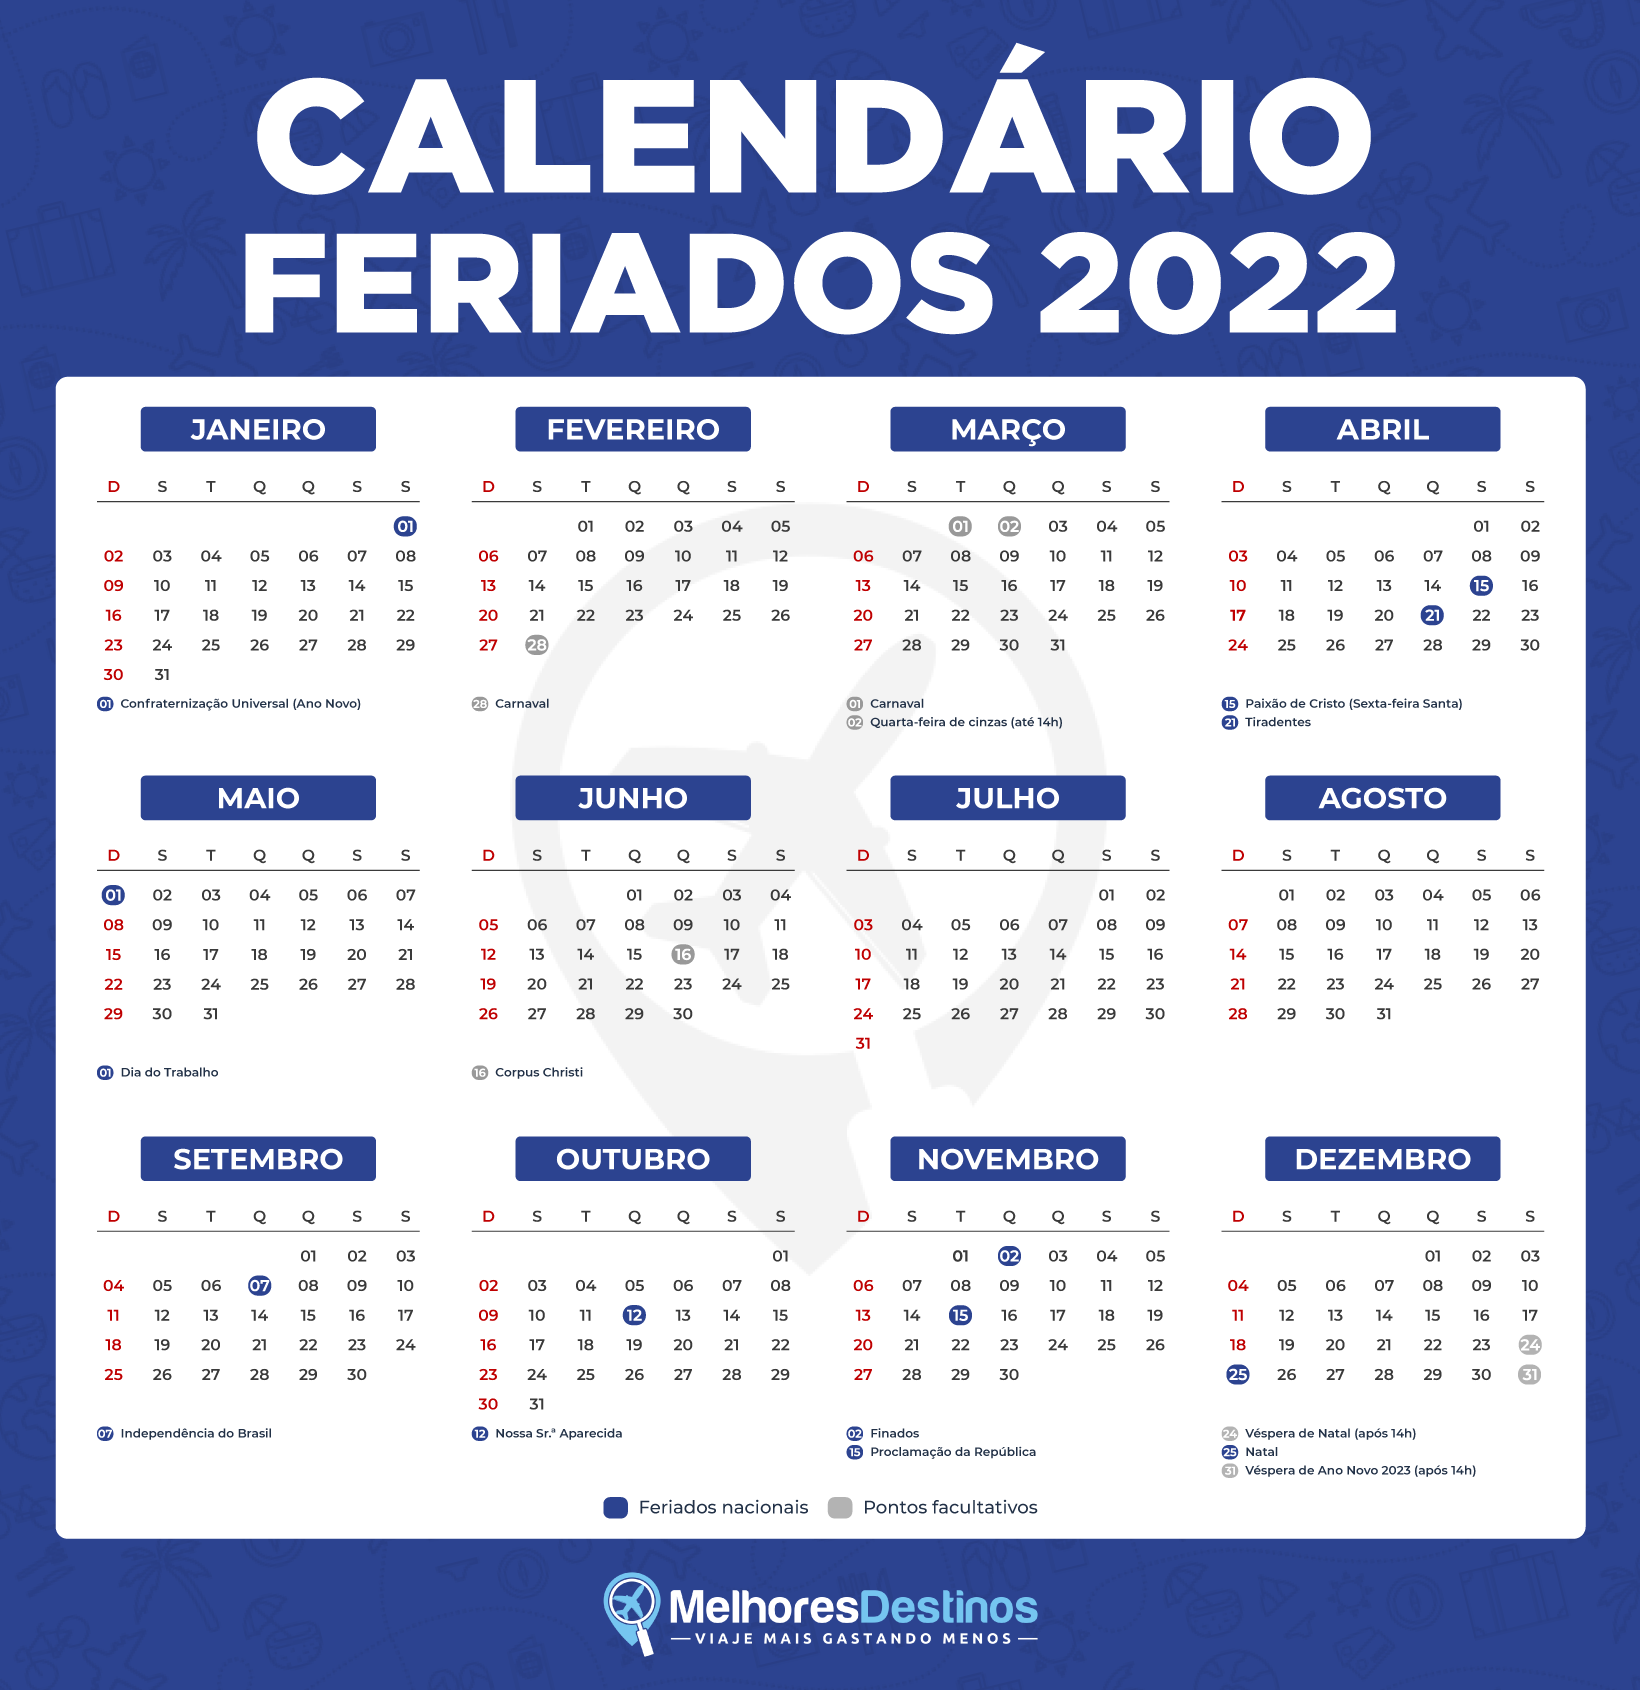 Feriados 2022 Confira O Calendário De Feriados E Planeje A Sua Viagem